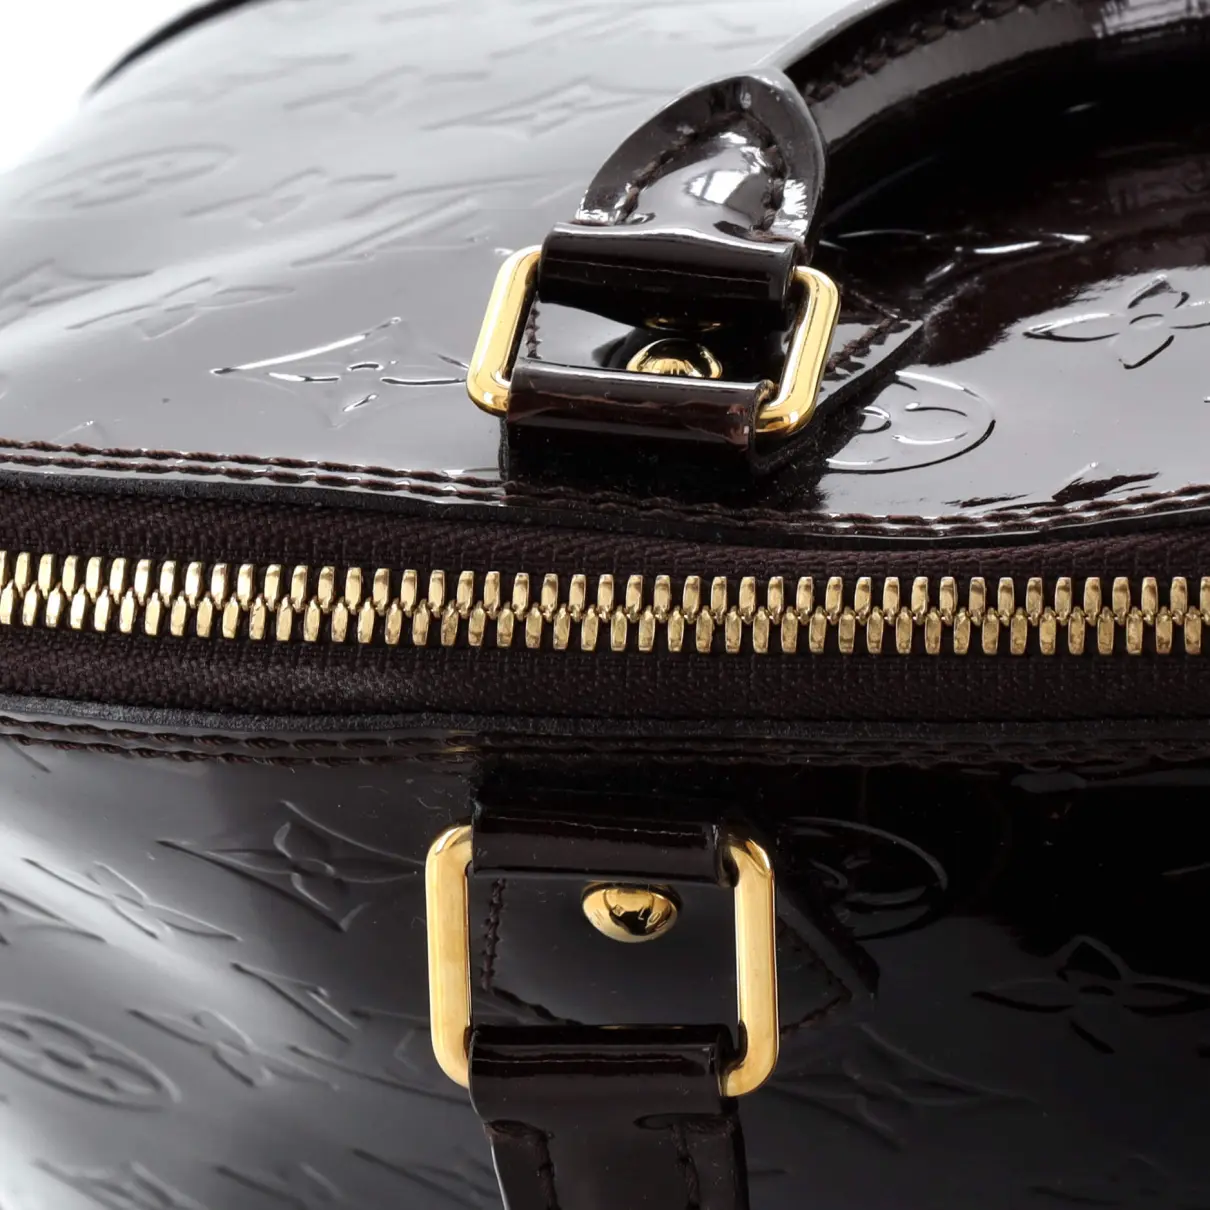 Patent leather handbag Louis Vuitton